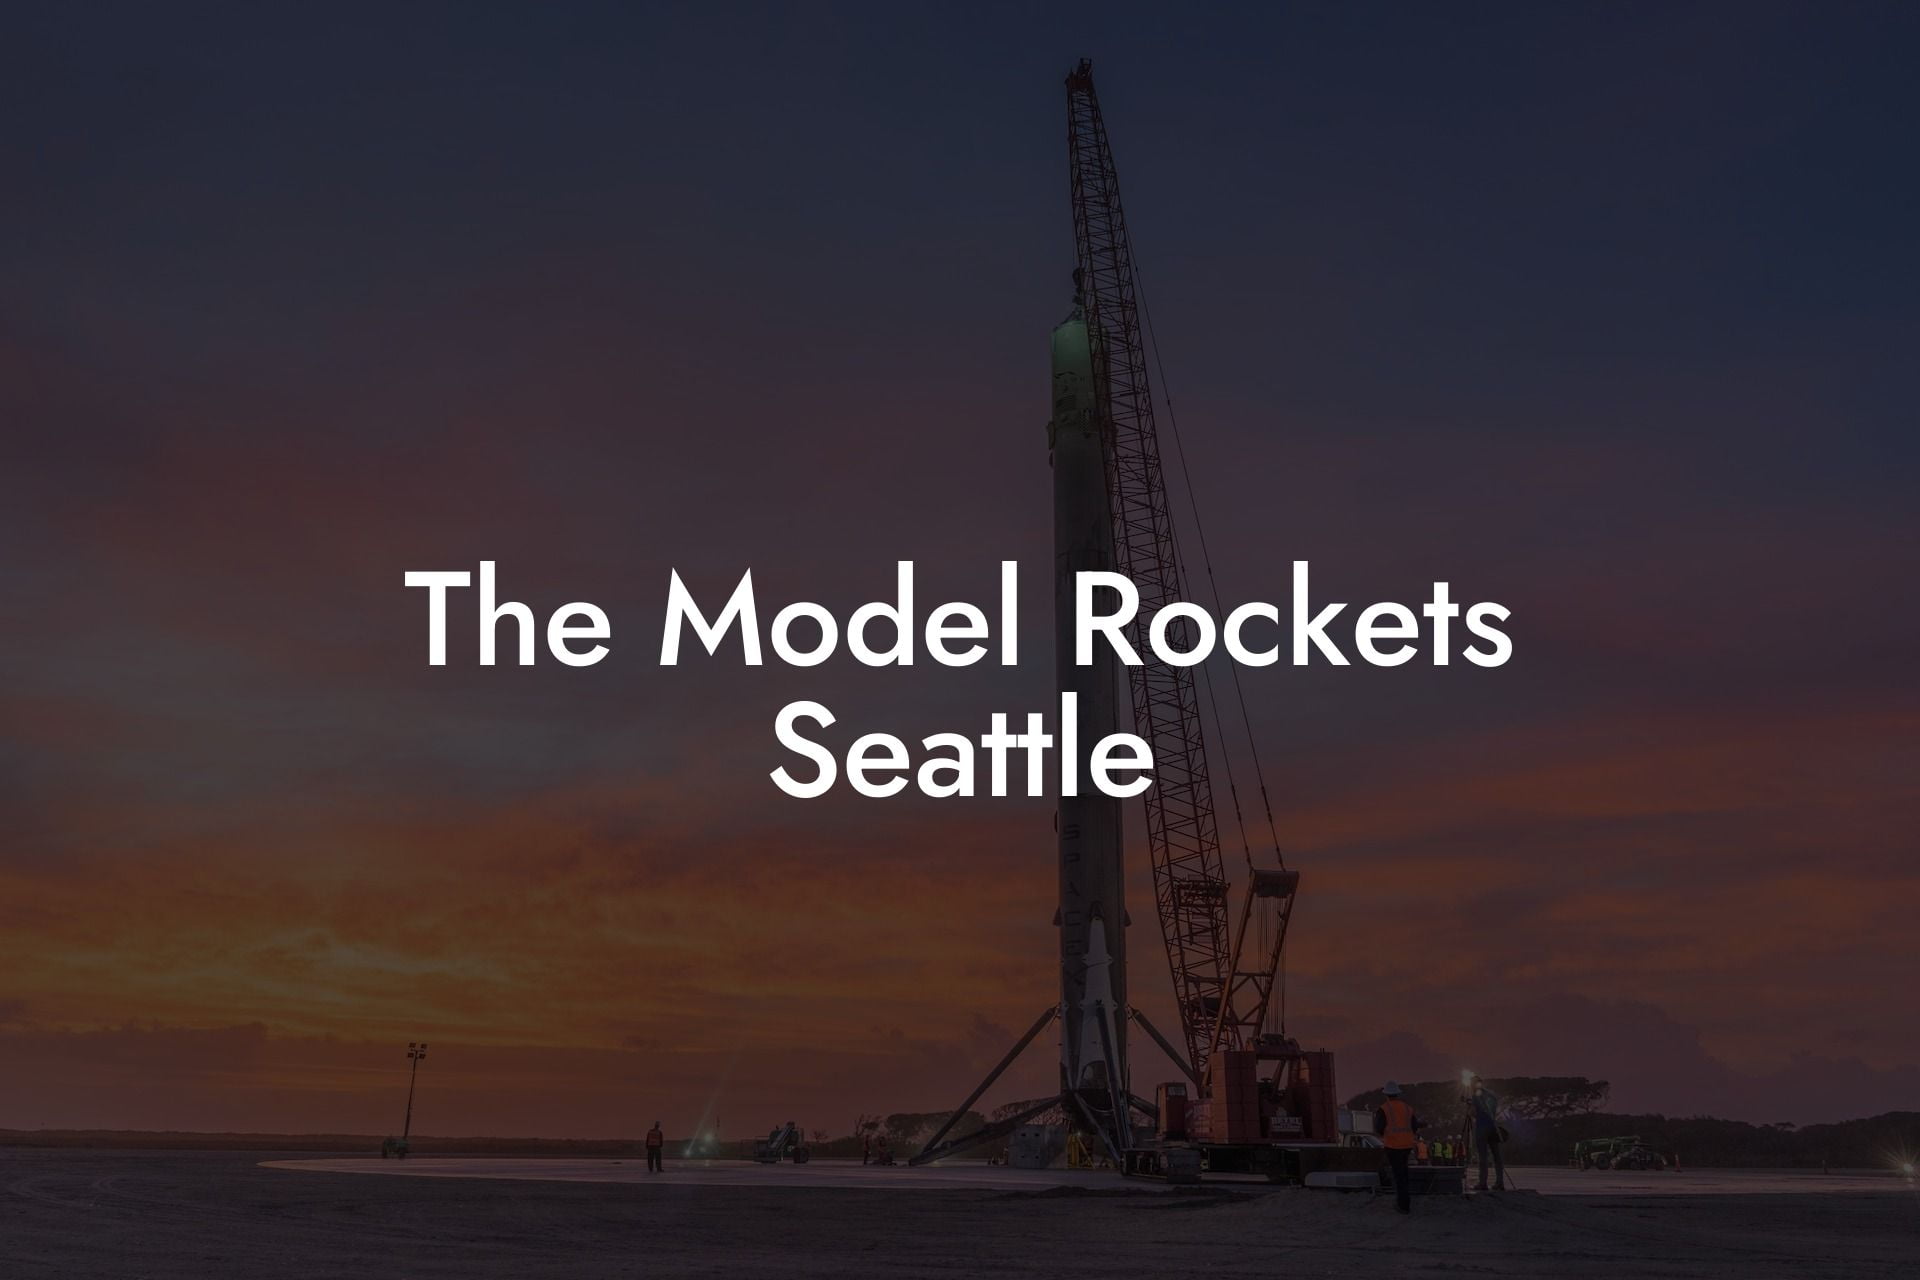 The Model Rockets Seattle